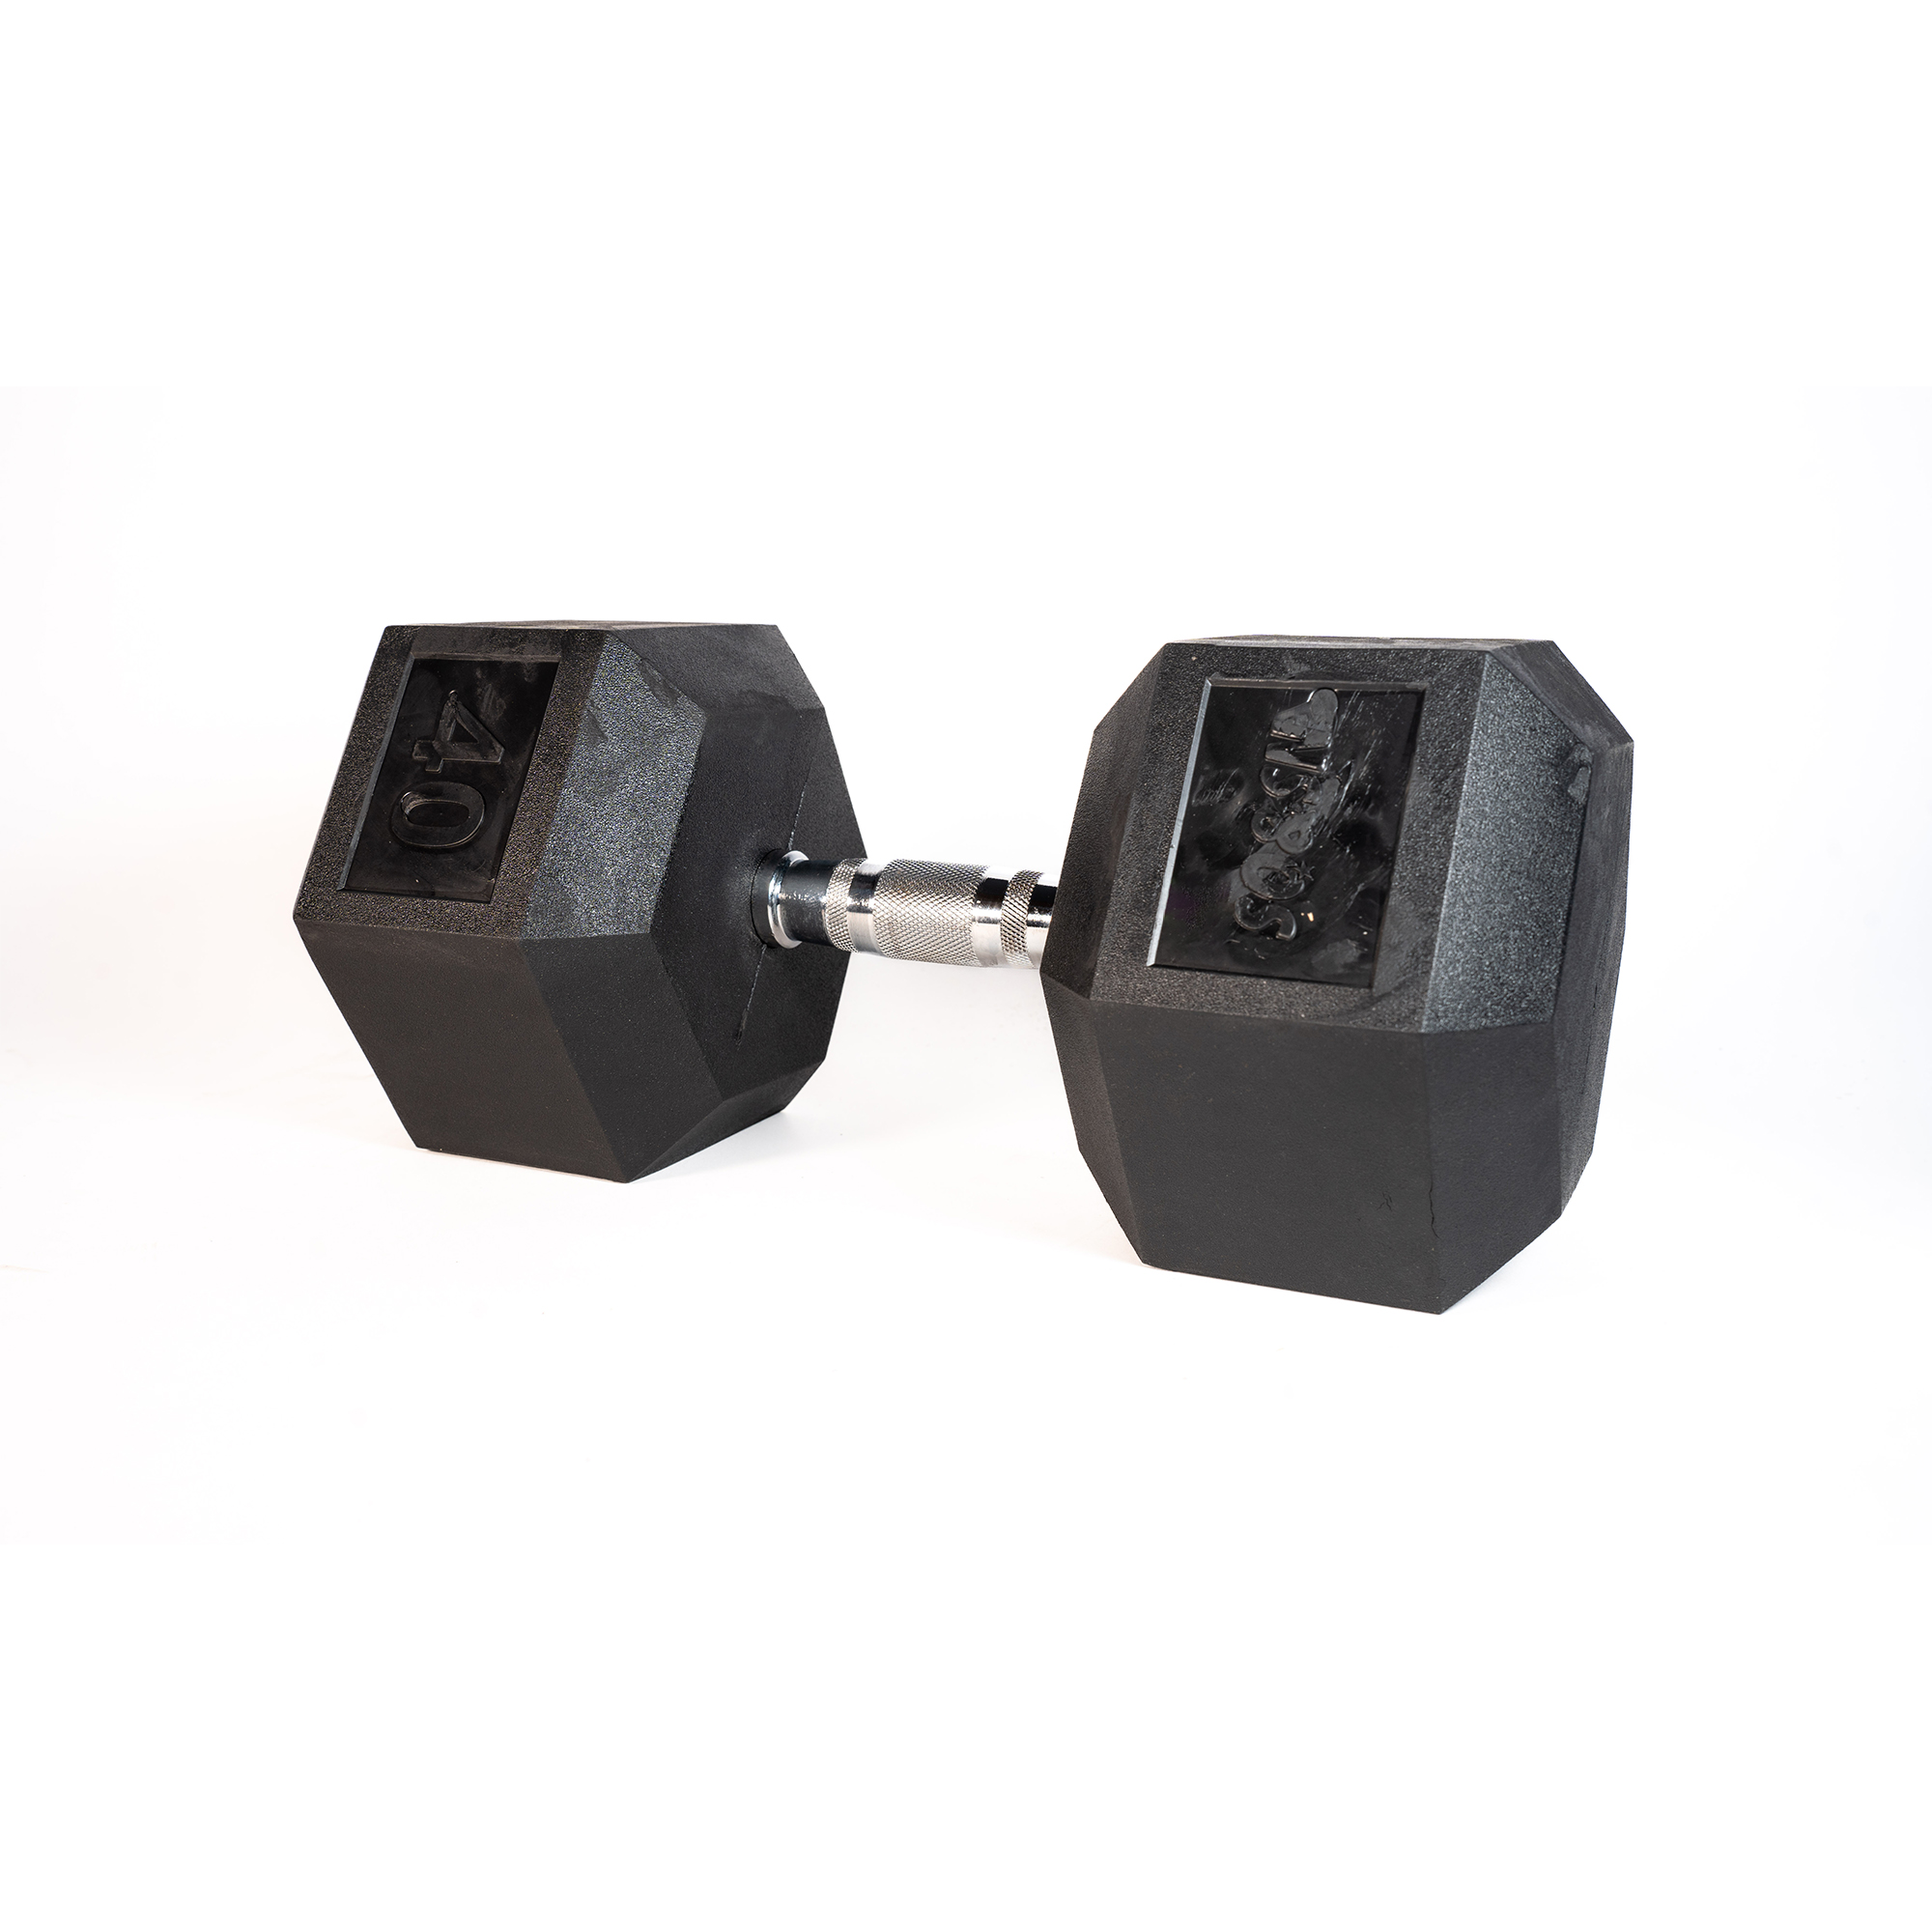 SQ&amp;SN Hexagon Håndvægt (40 kg) med forkromet greb. Udstyr til crossfit træning, styrketræning og funktionel træning